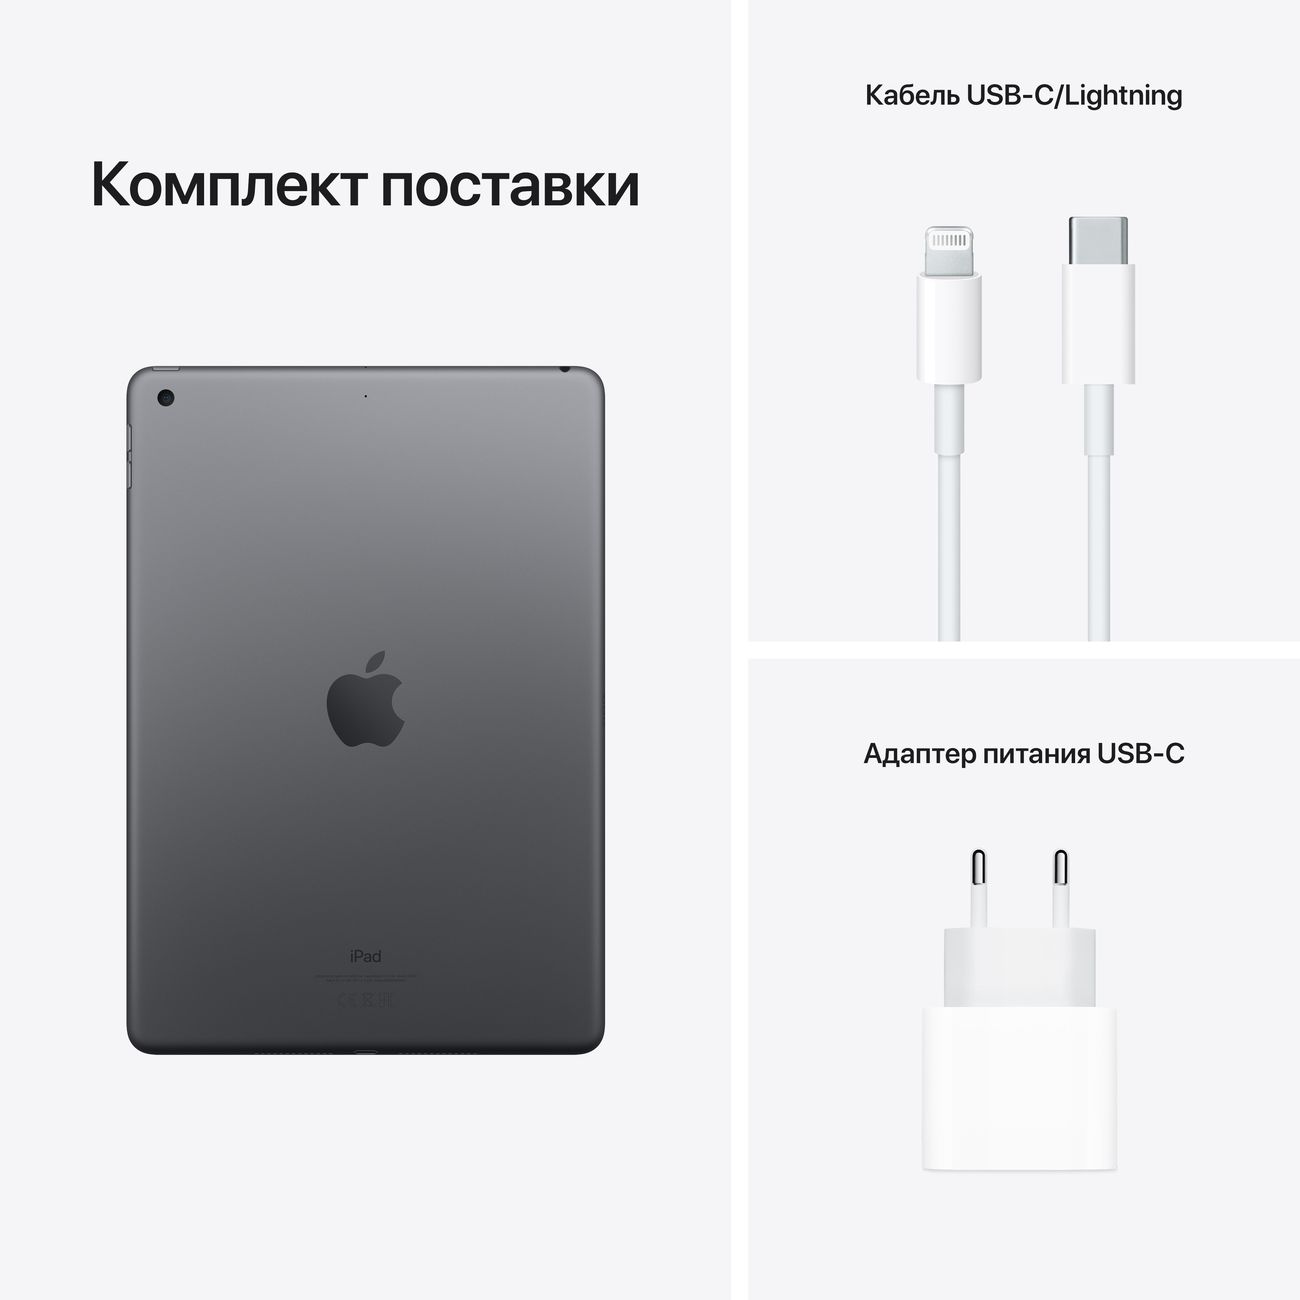 Купить планшет apple ipad 10.2 wi-fi 64gb space grey (mk2k3) Apple iPad в официальном магазине Apple, Samsung, Xiaomi. iPixel.ru Купить, заказ, кредит, рассрочка, отзывы,  характеристики, цена,  фотографии, в подарок.